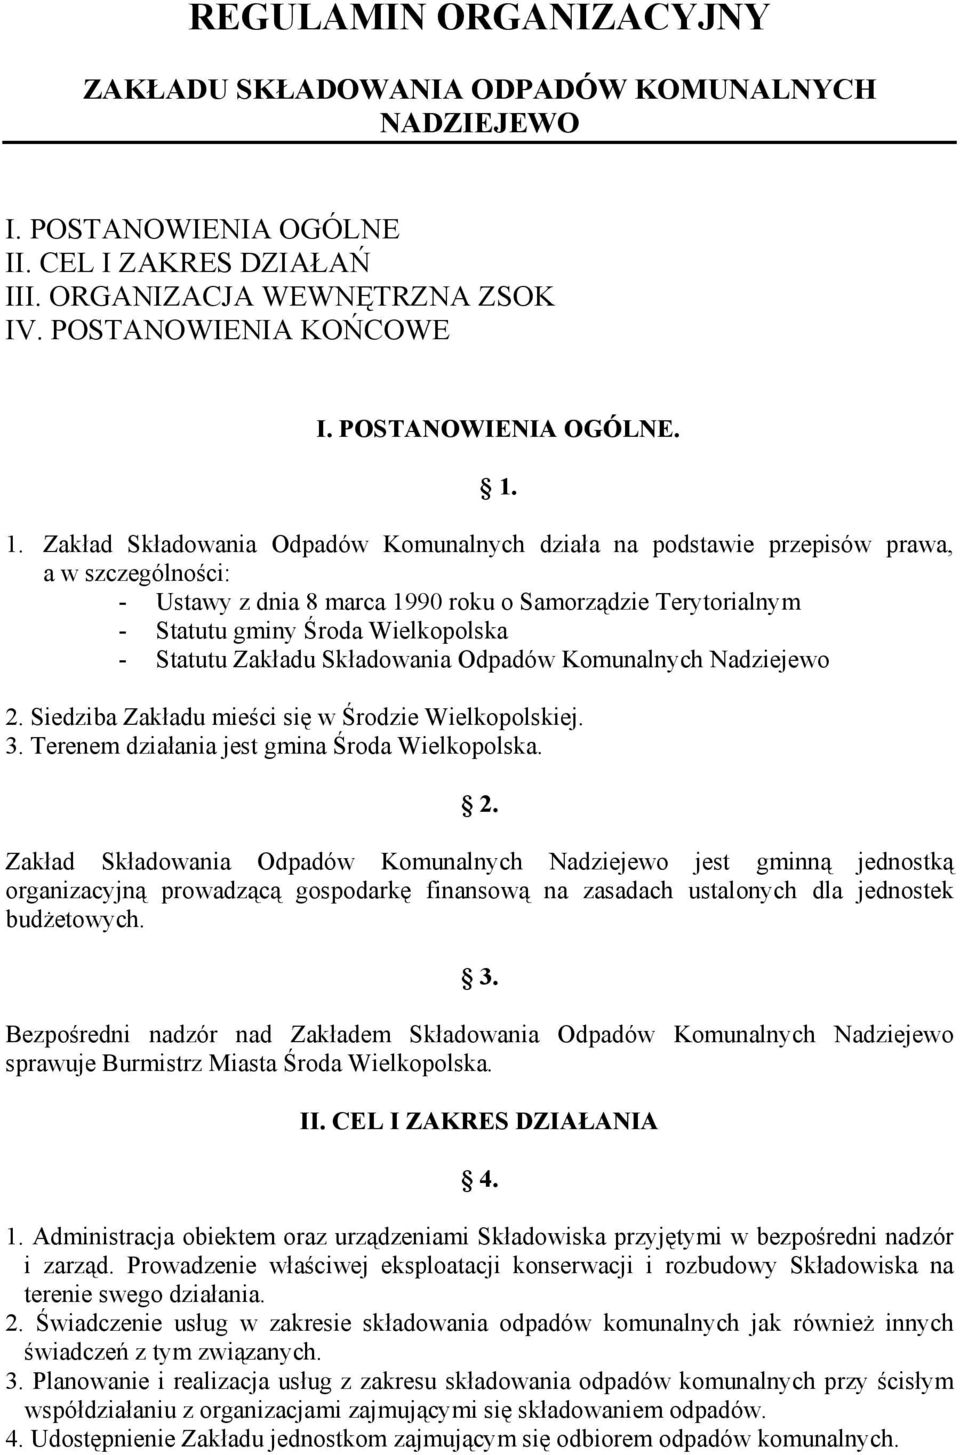 Zakład Składowania Odpadów Komunalnych działa na podstawie przepisów prawa, a w szczególności: - Ustawy z dnia 8 marca 1990 roku o Samorządzie Terytorialnym - Statutu gminy Środa Wielkopolska -